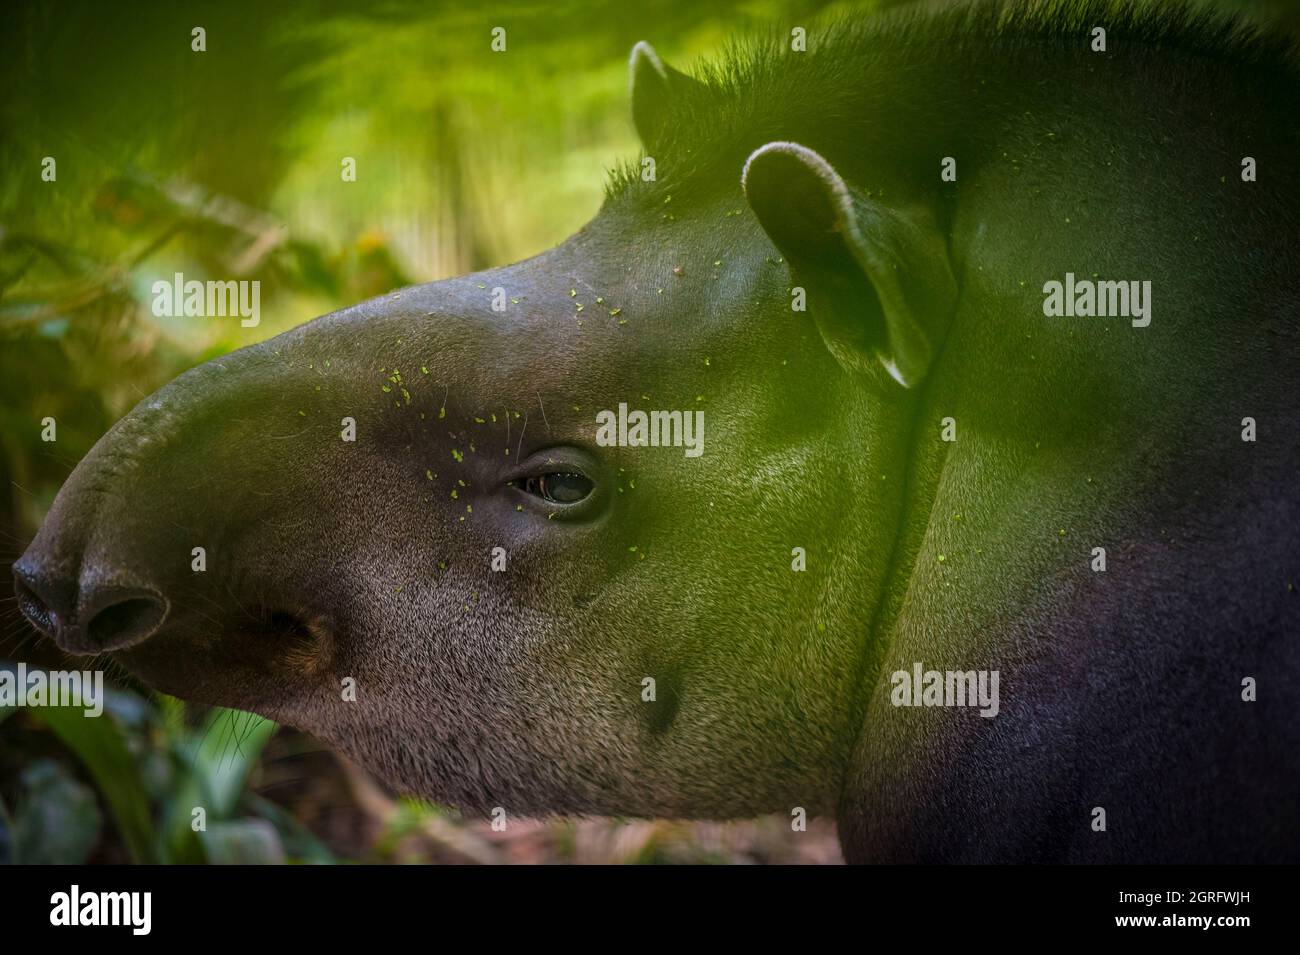 France, Guyane française, Cayenne, Parc zoologique et botanique de Guyane française, portrait d'un Tapir américain (Tapirus terrestris) Banque D'Images